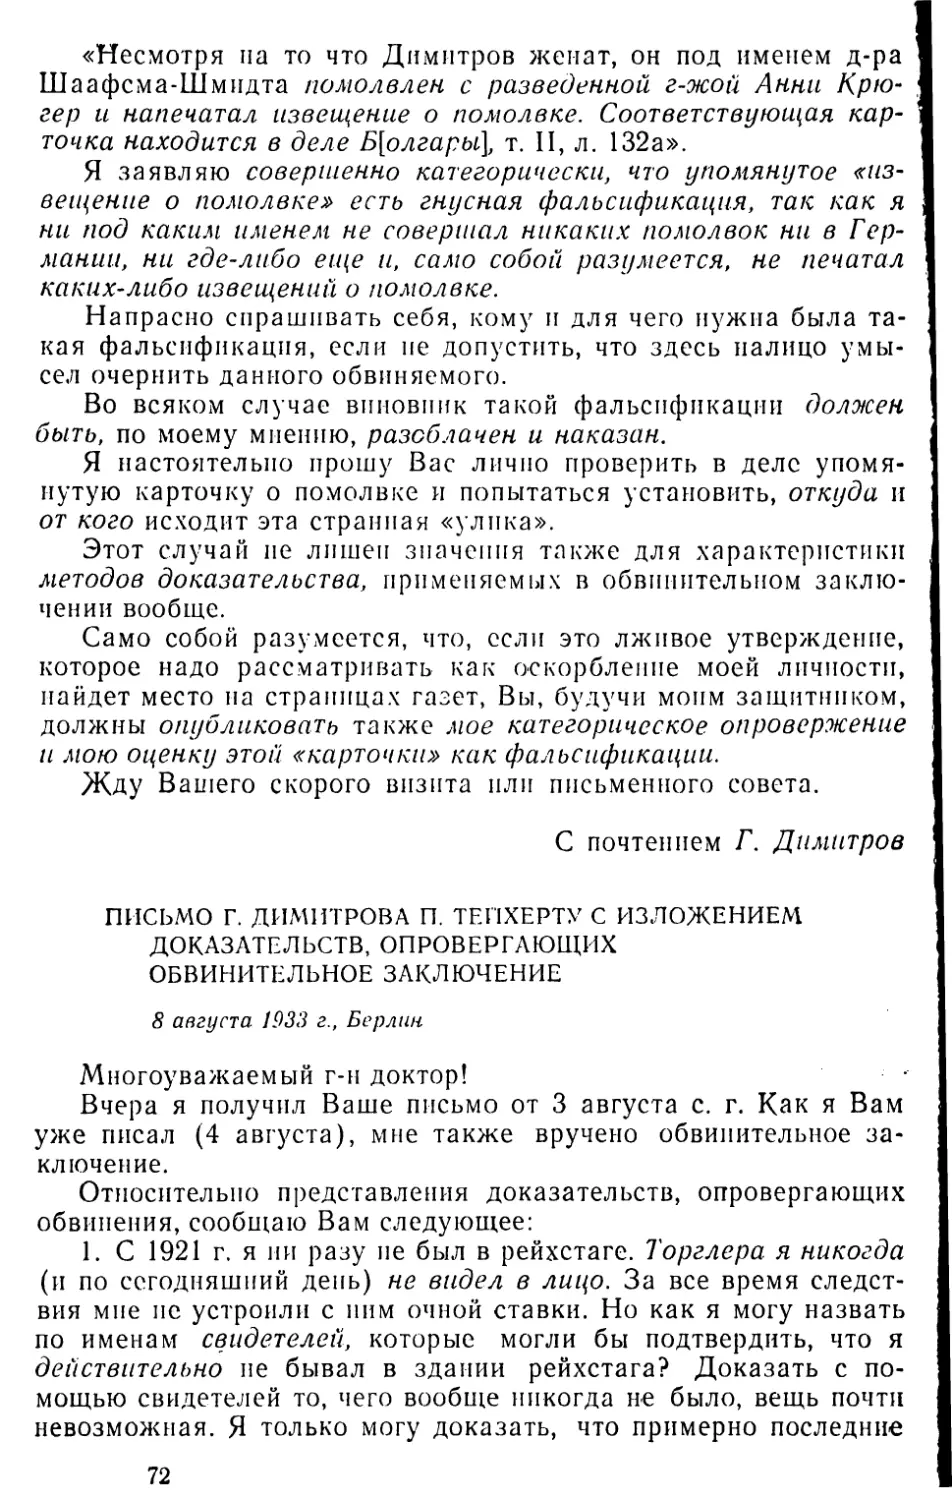 Письмо Г. Димитрова П. Тейхерту с изложением доказательств, опровергающих обвинительное заключение. 8 августа 1933 г